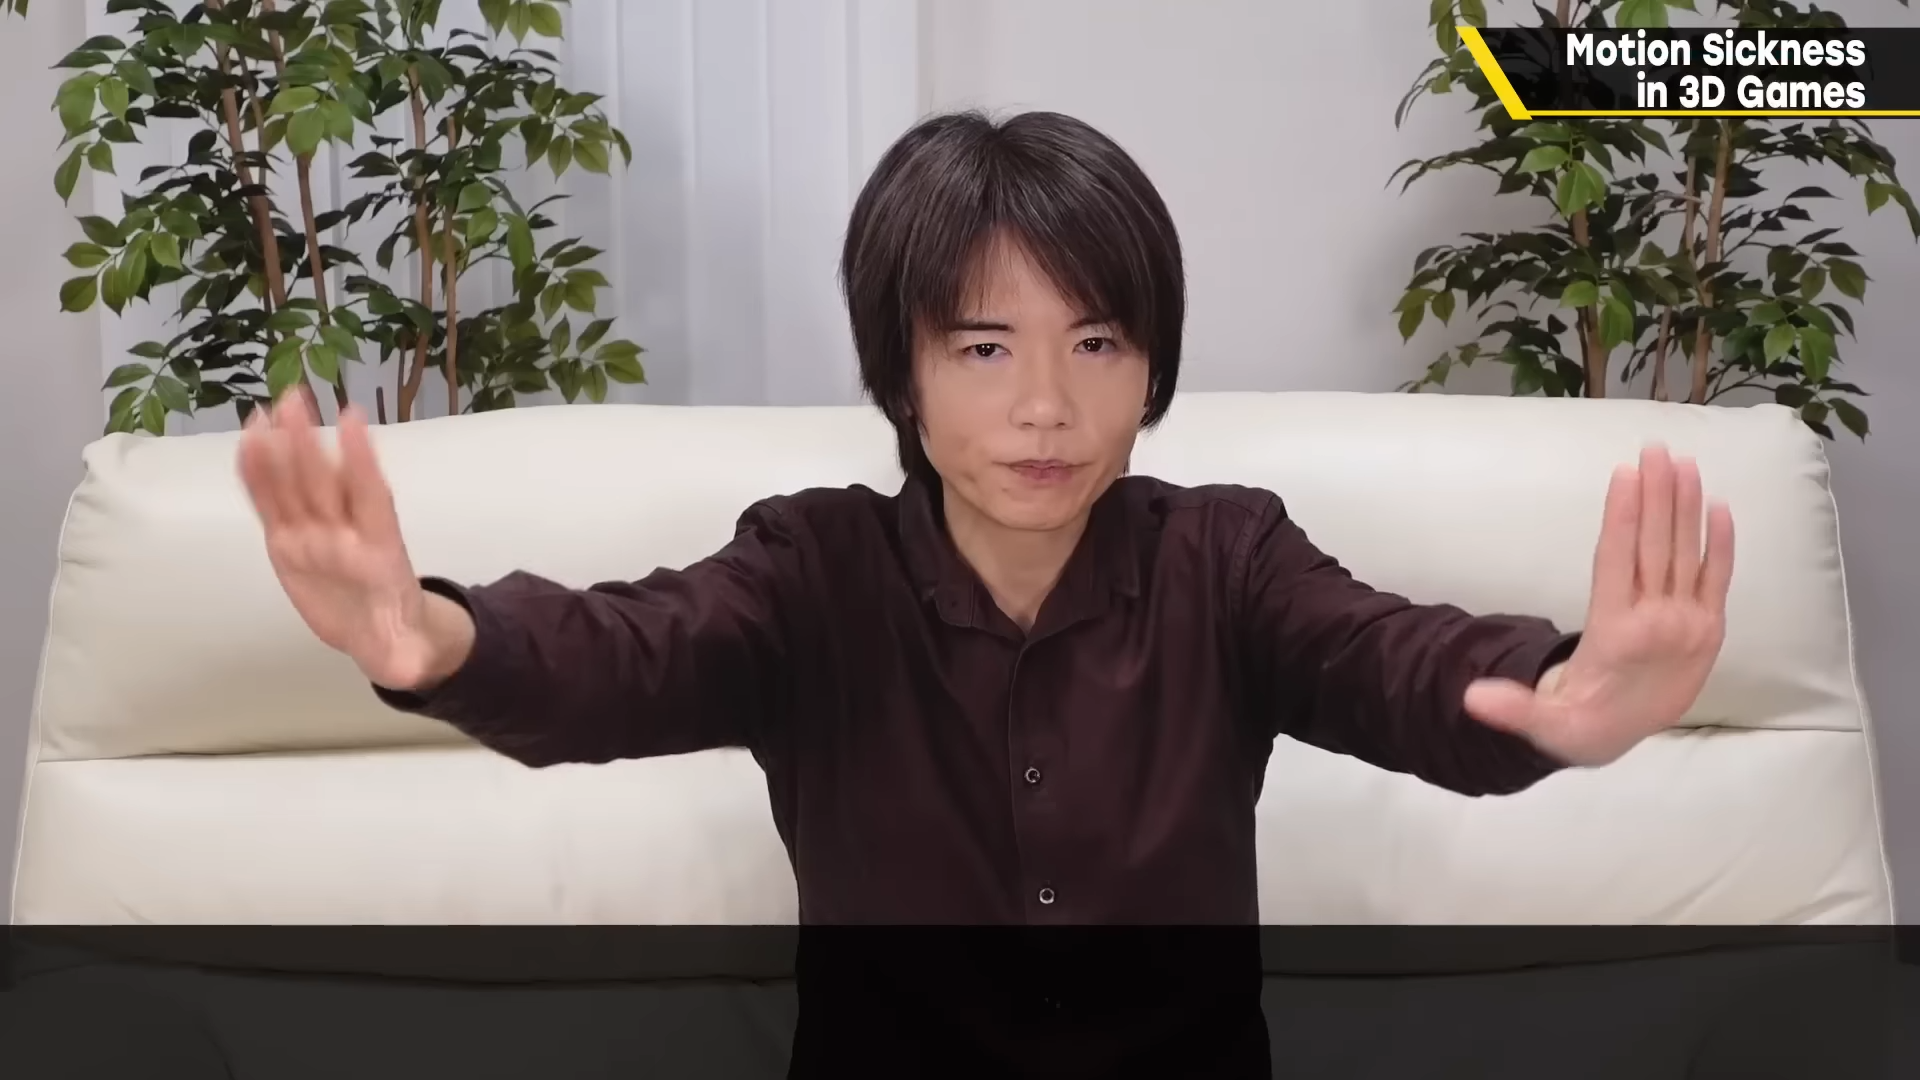 桜井政博氏が新しいビデオでビデオゲーム酔いについて語る